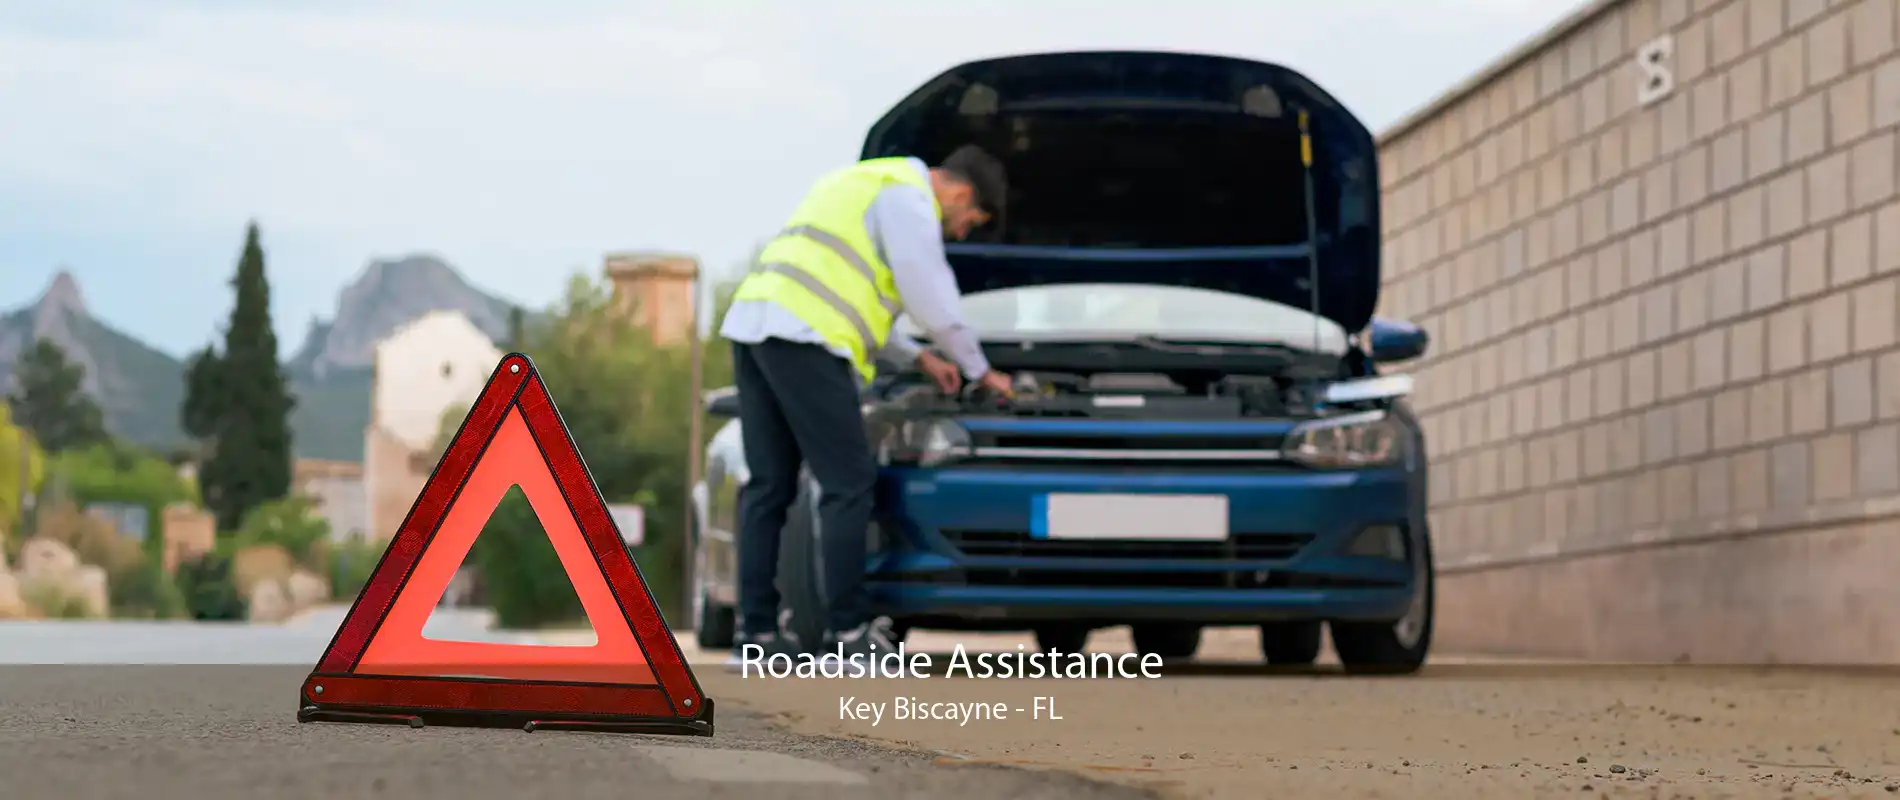 Roadside Assistance Key Biscayne - FL